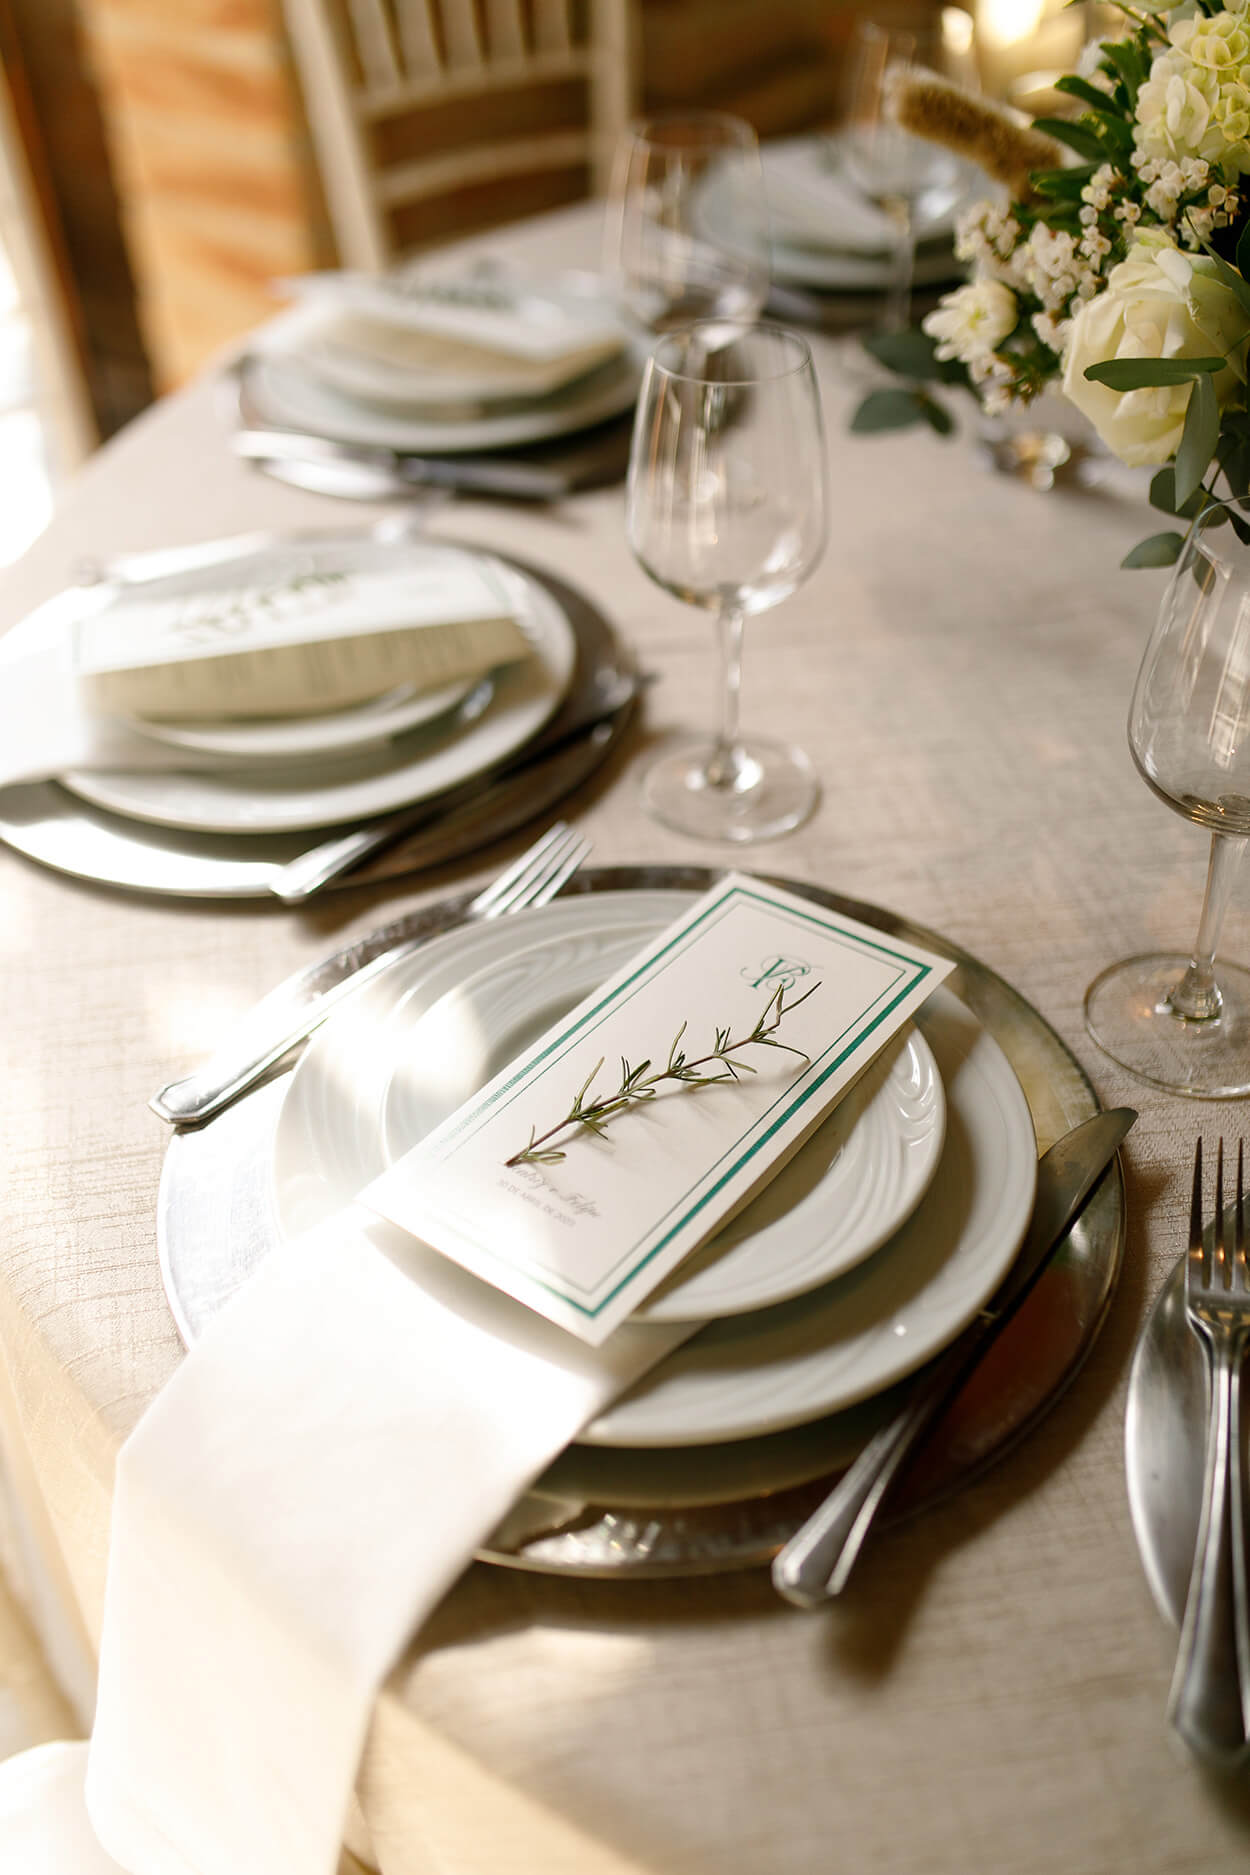 mesa com toalha branca posta com menu sobre o prato branco com ramo de alecrim